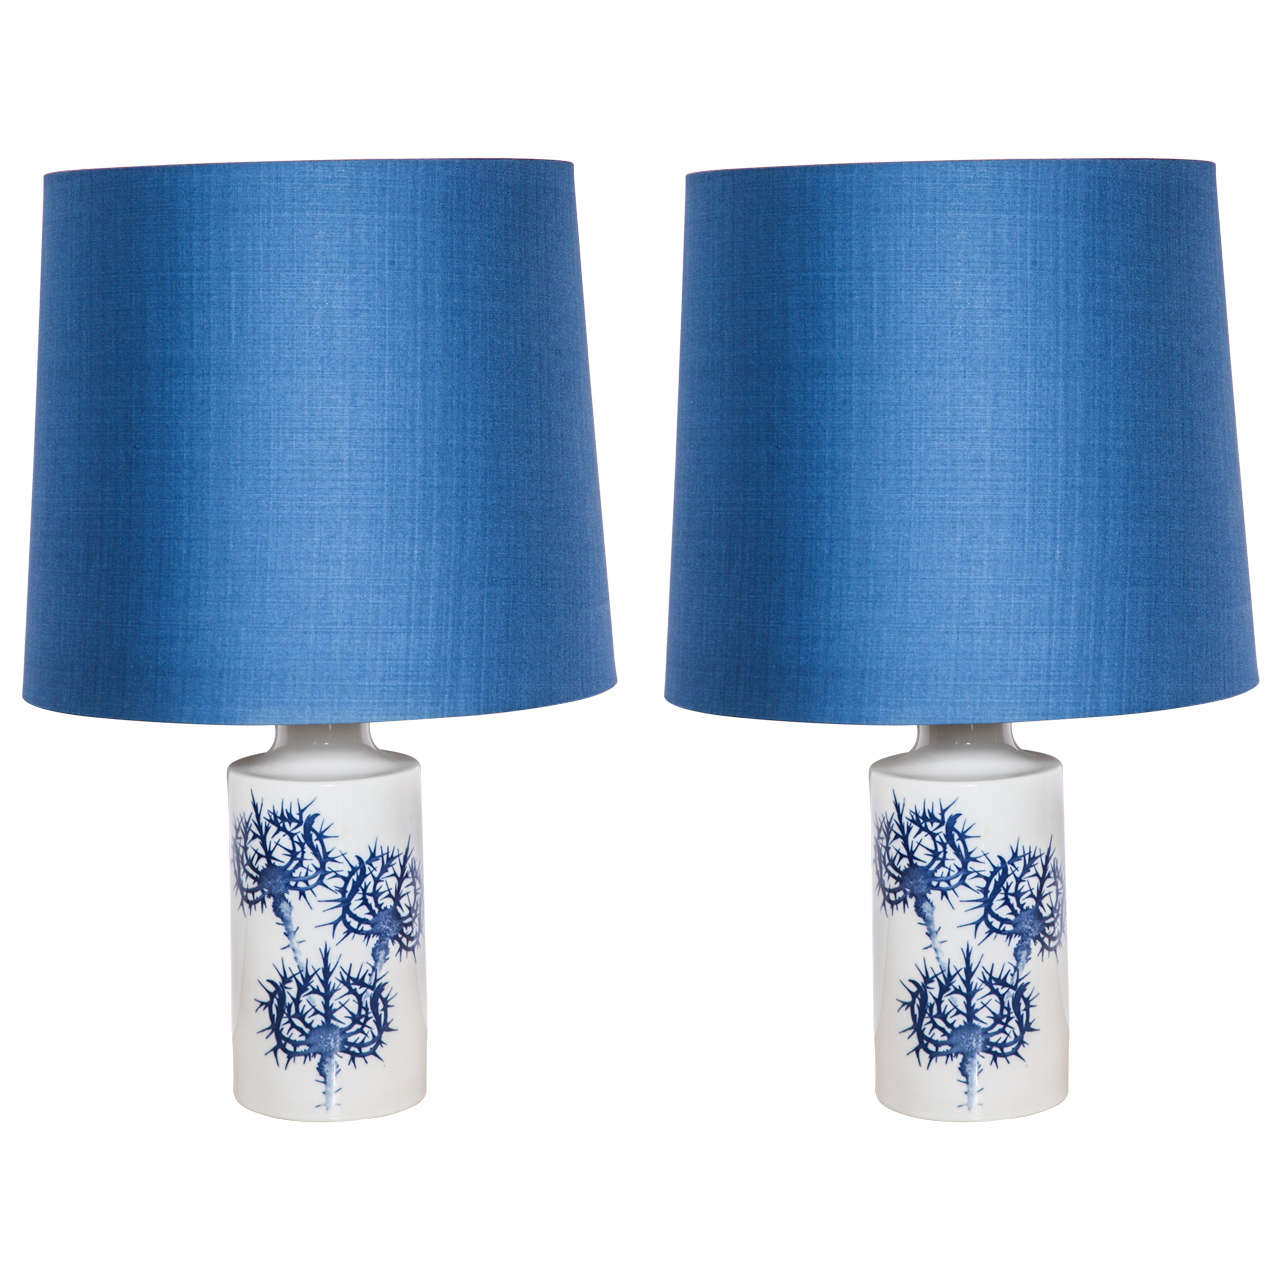 Pair of Ceramic Table Lamps by Kaj Lange by Royal Copenhagen for Fog & Morup